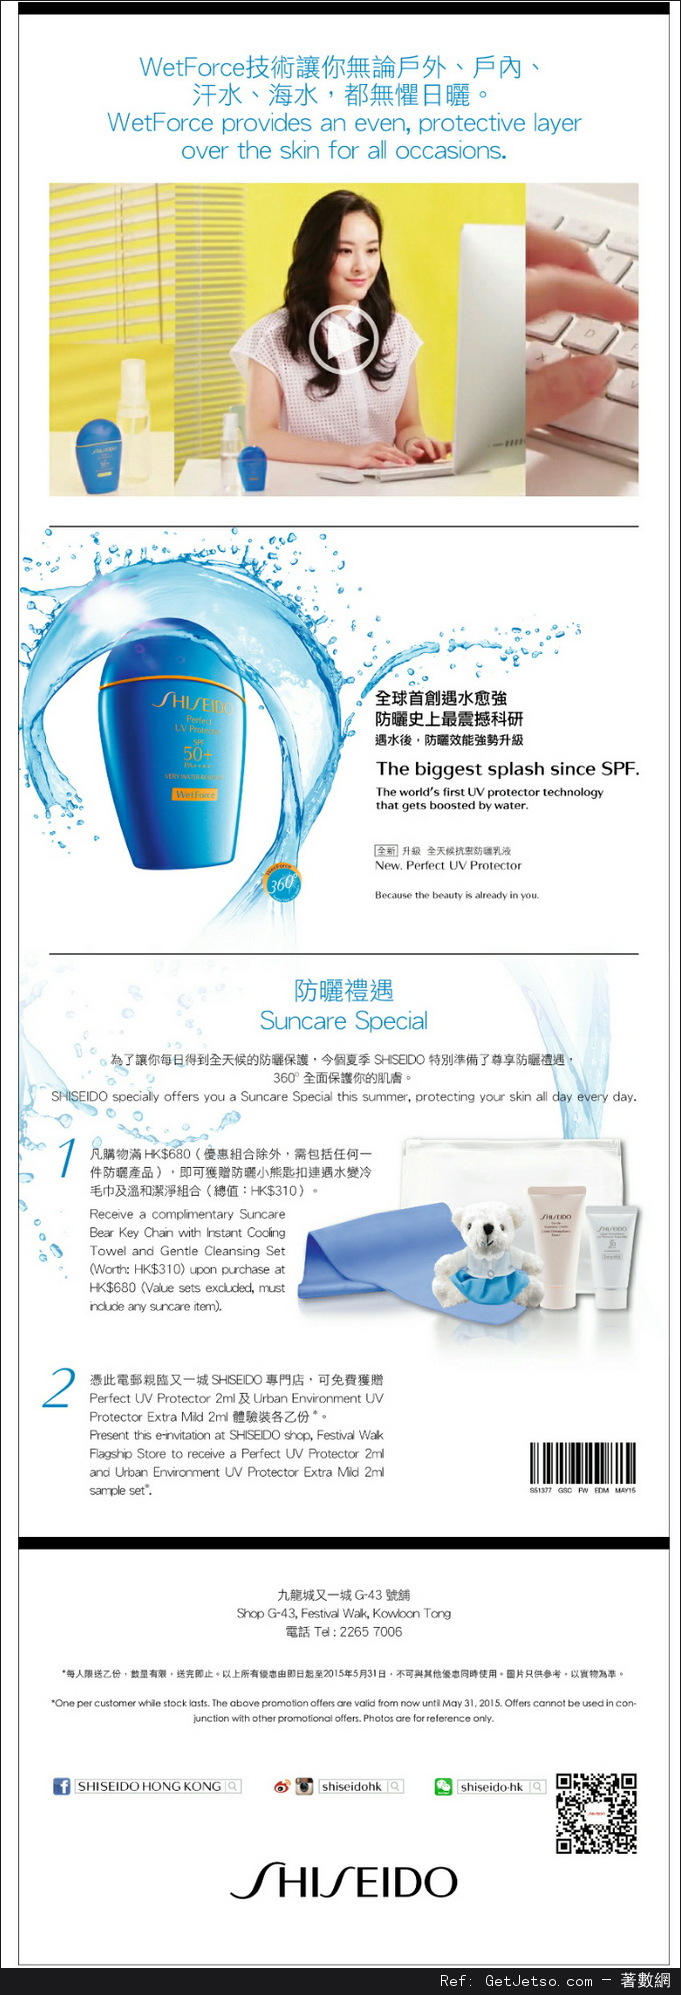 SHISEIDO 全天候抗禦防曬乳液免費試用及購買優惠(至15年5月31日)圖片1